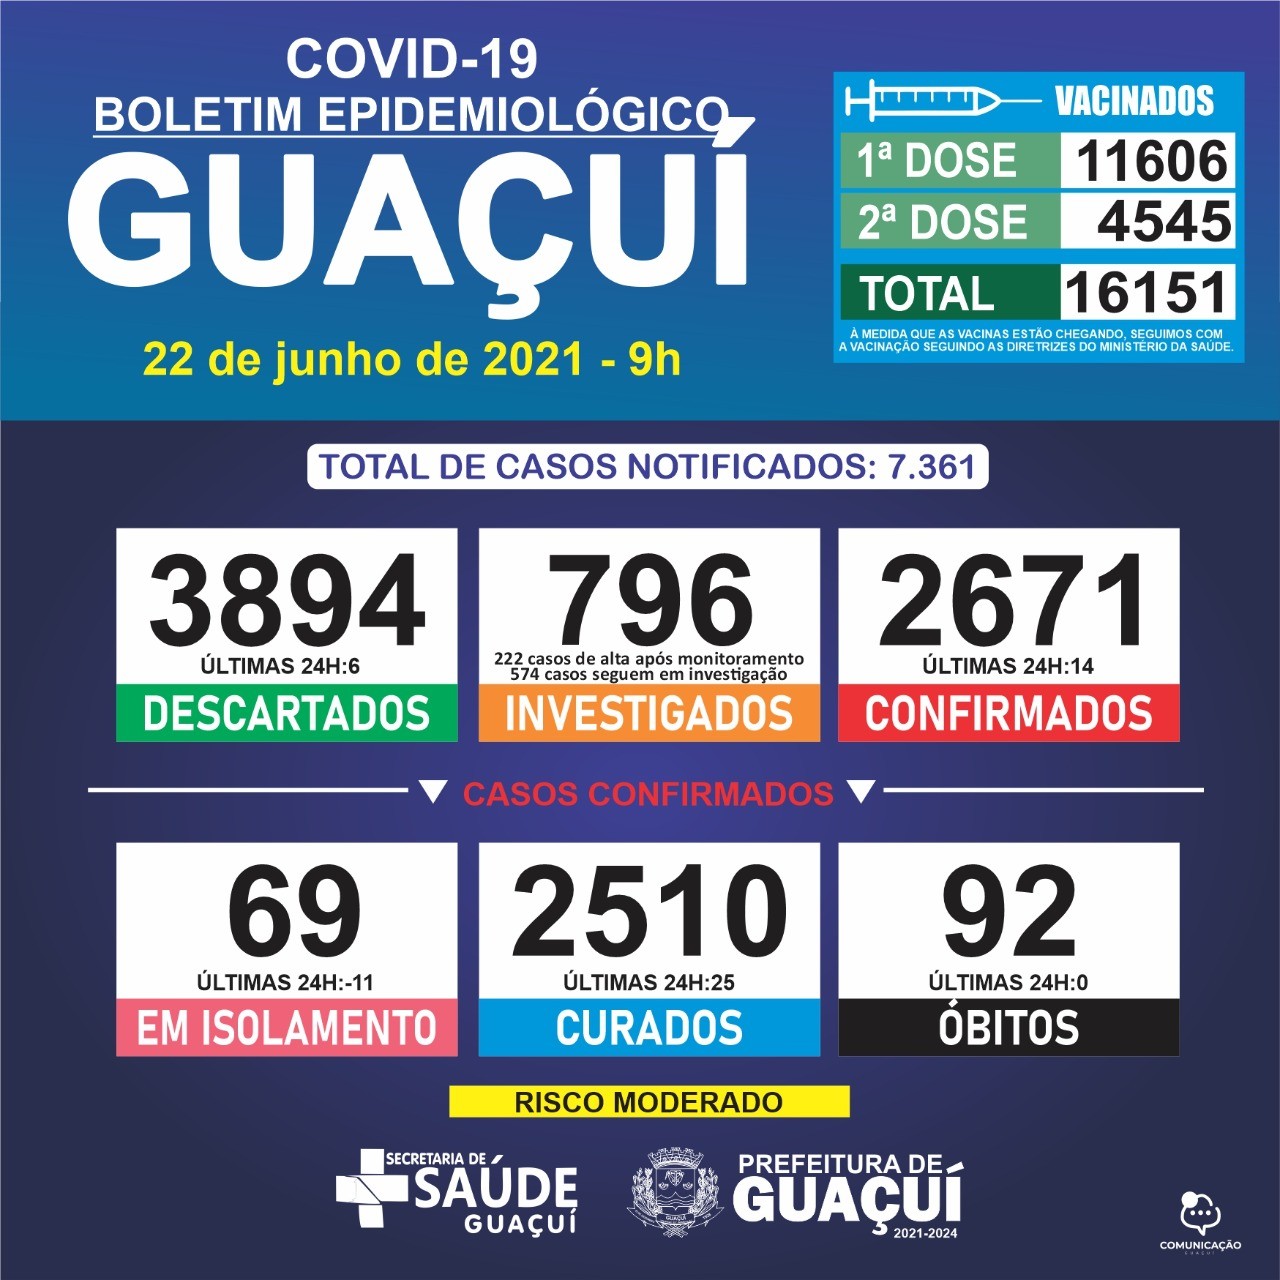 Boletim Epidemiológico 22/06/21: Guaçuí registra 14 casos confirmados e 25 curados nas últimas 24 horas